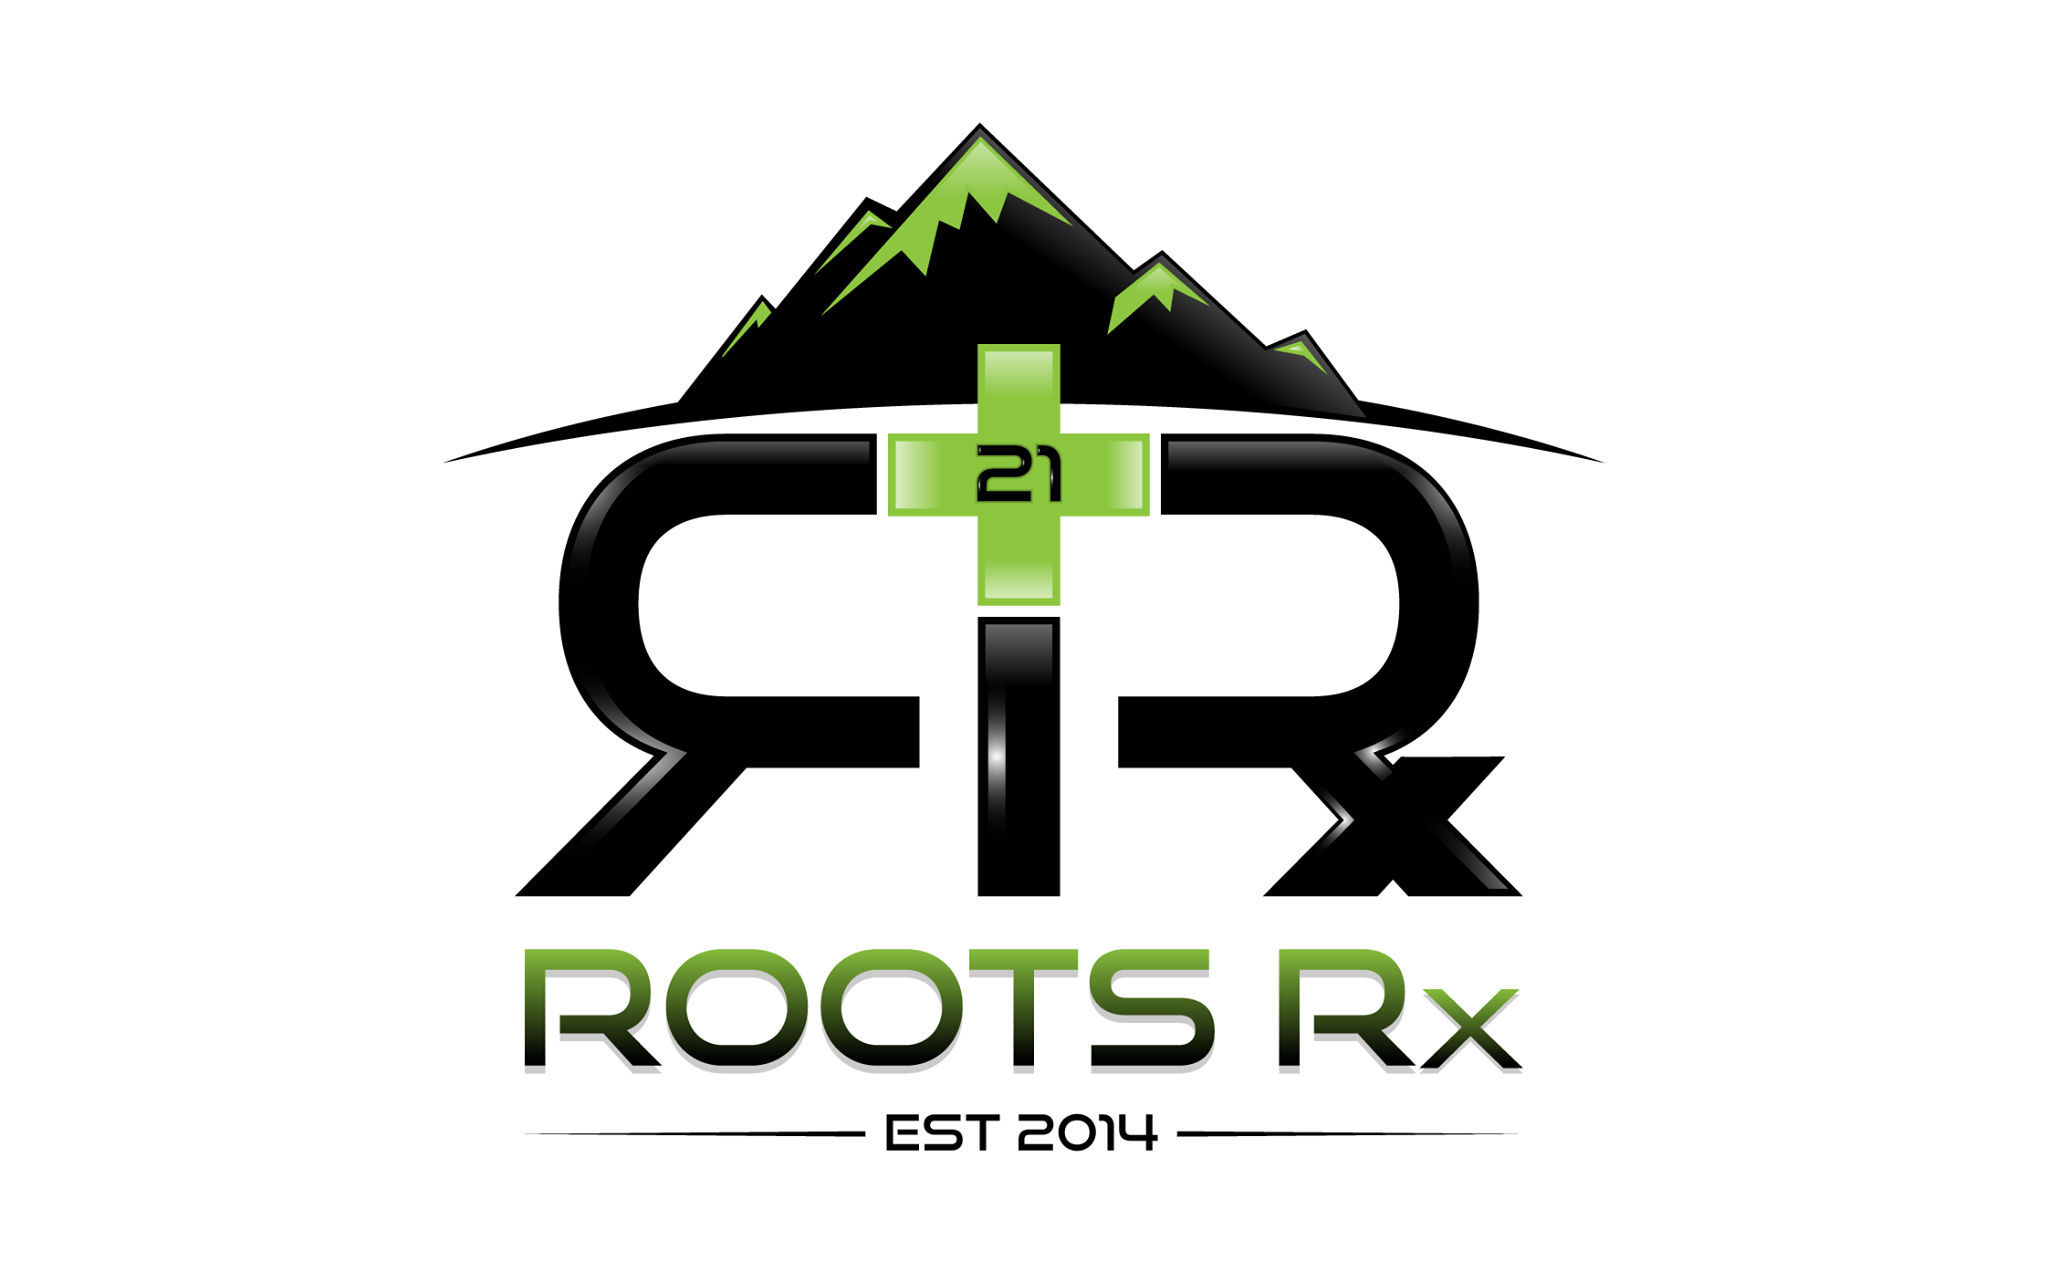 Roots RX Gunnison